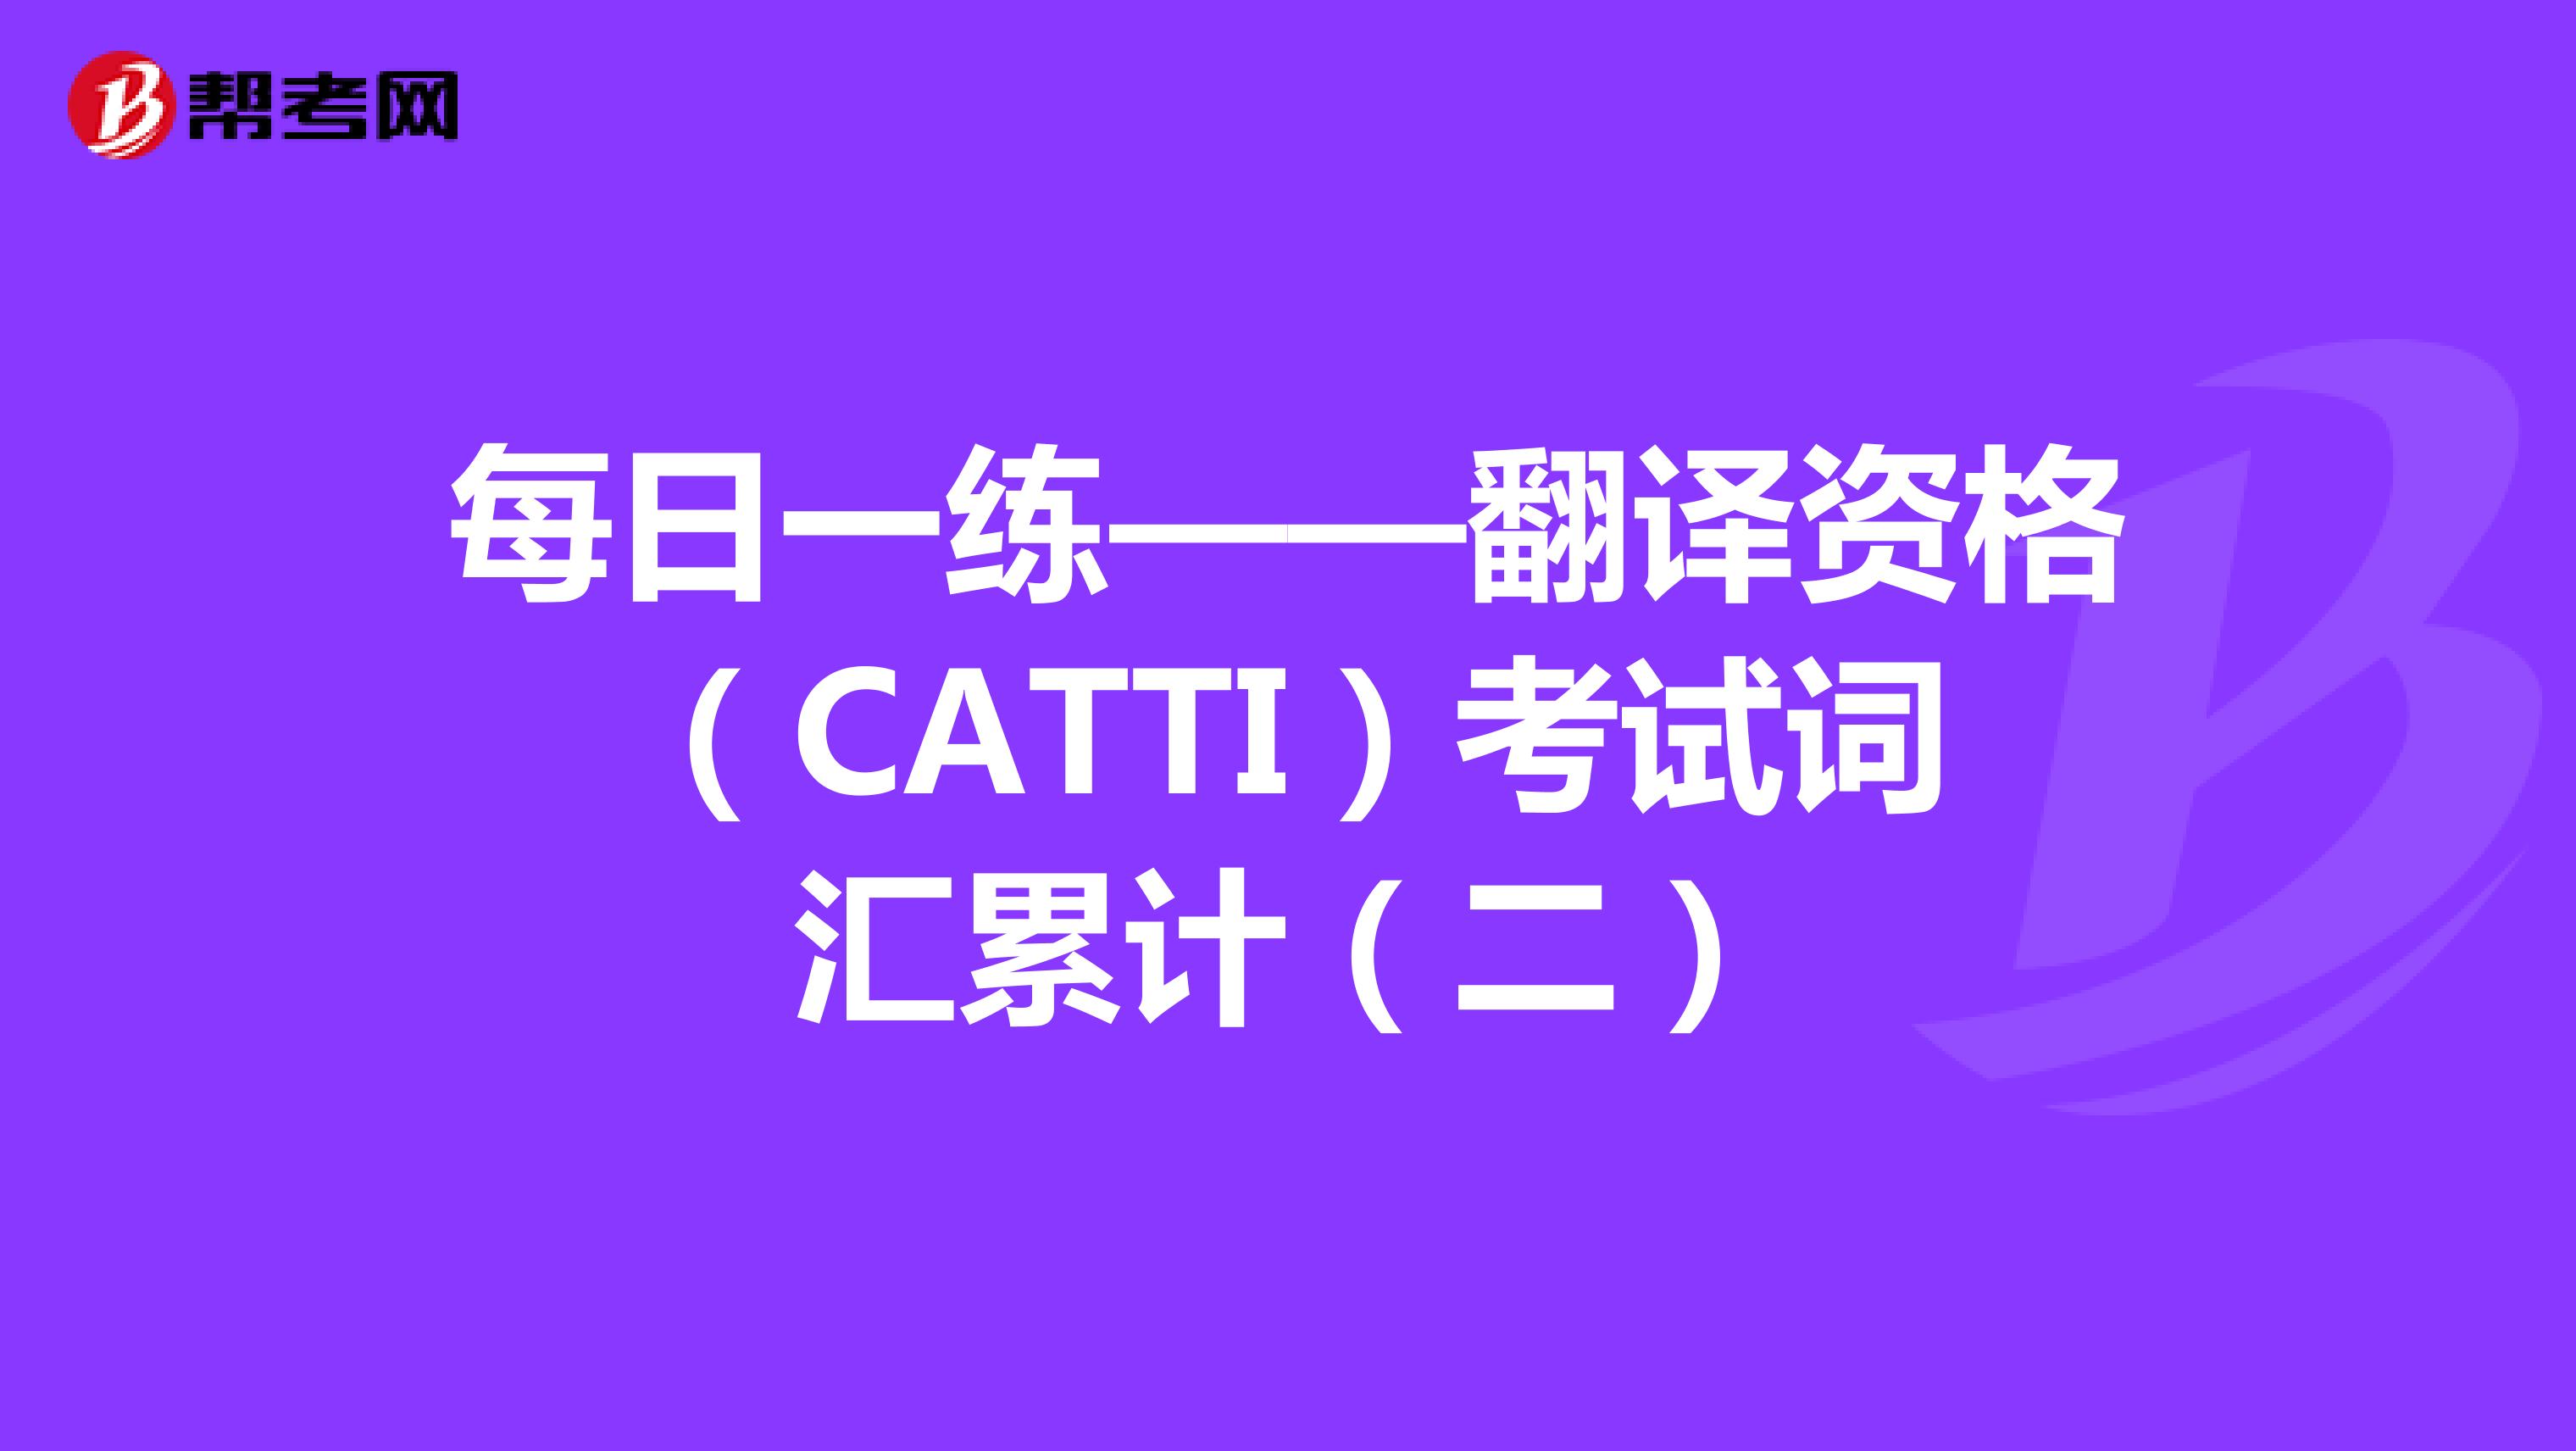 每日一练——翻译资格（CATTI）考试词汇累计（二）